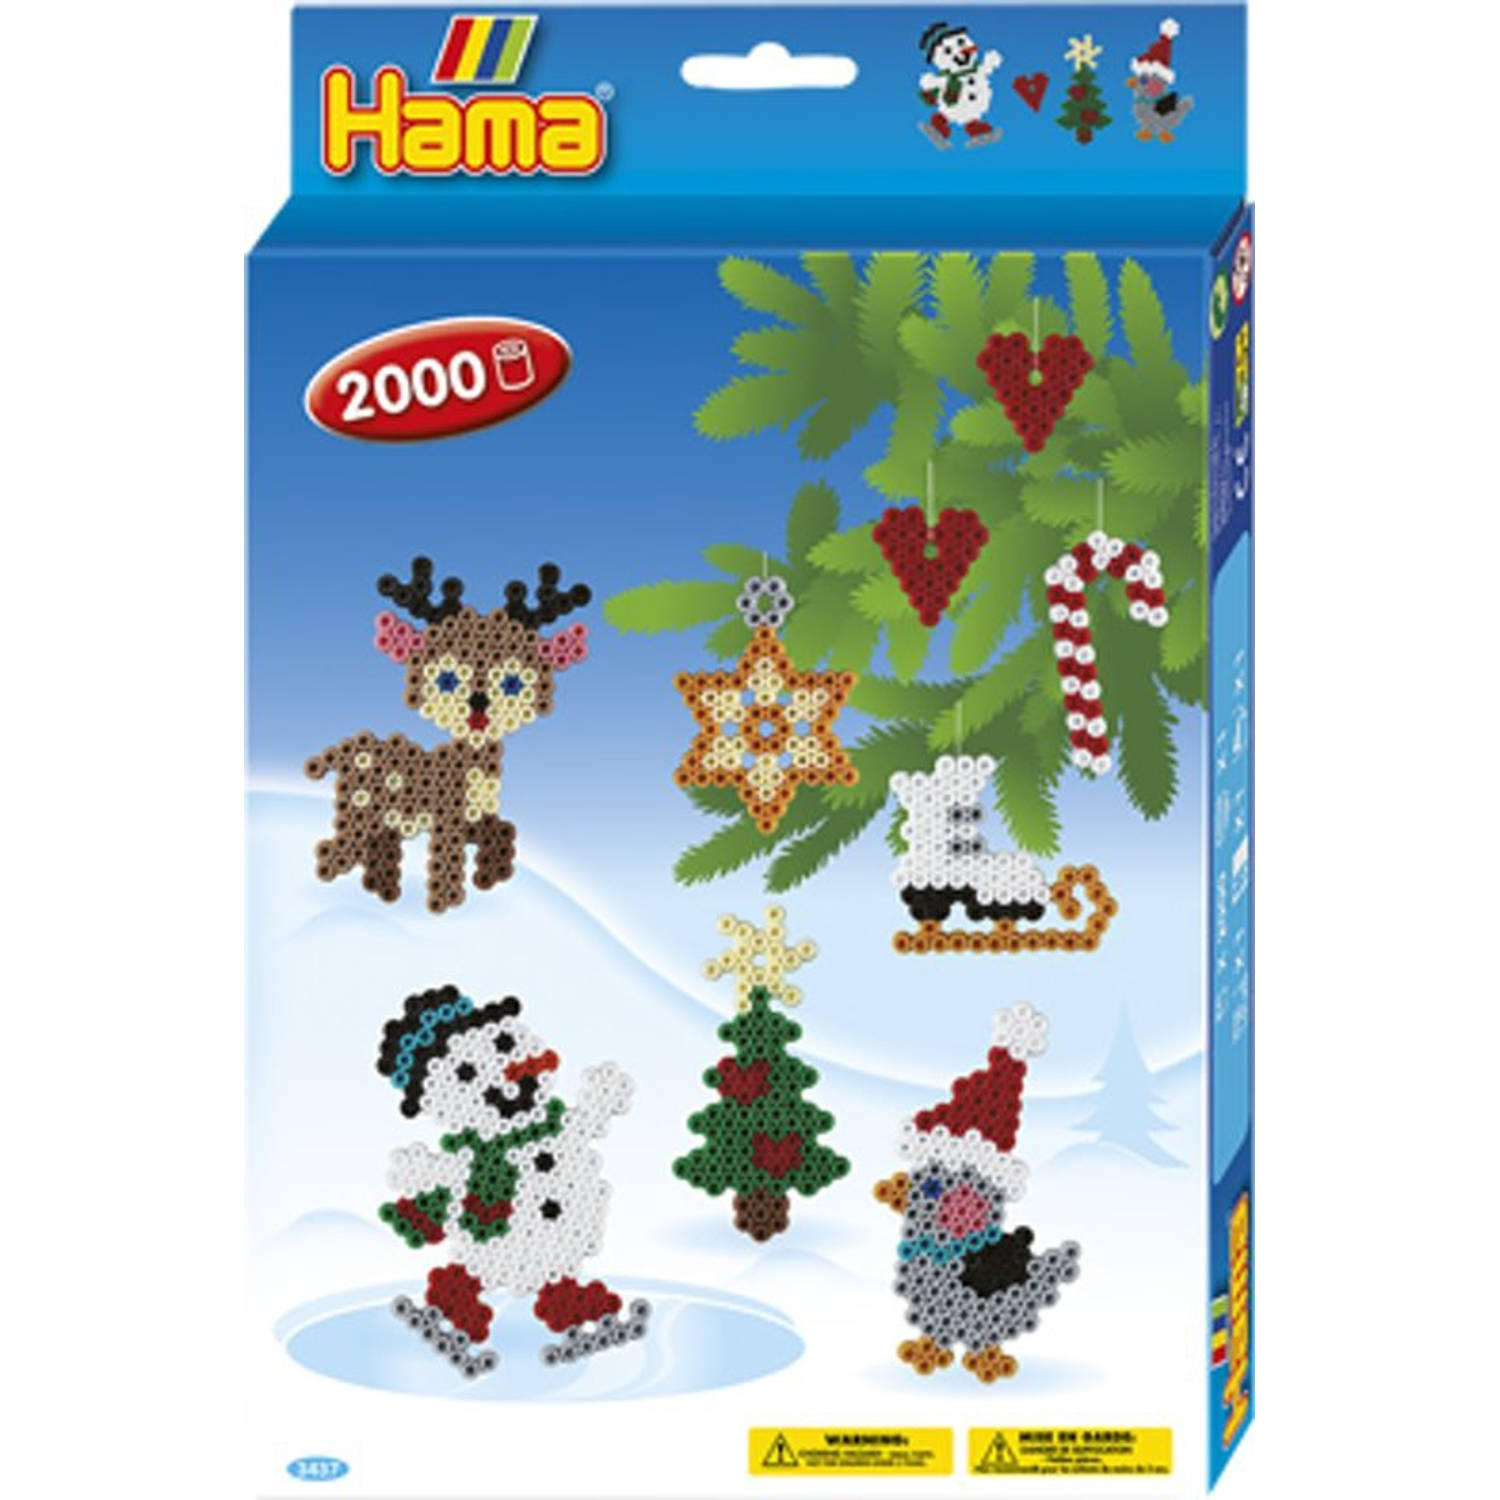 Hama strijkkralen Box 2000 kerst